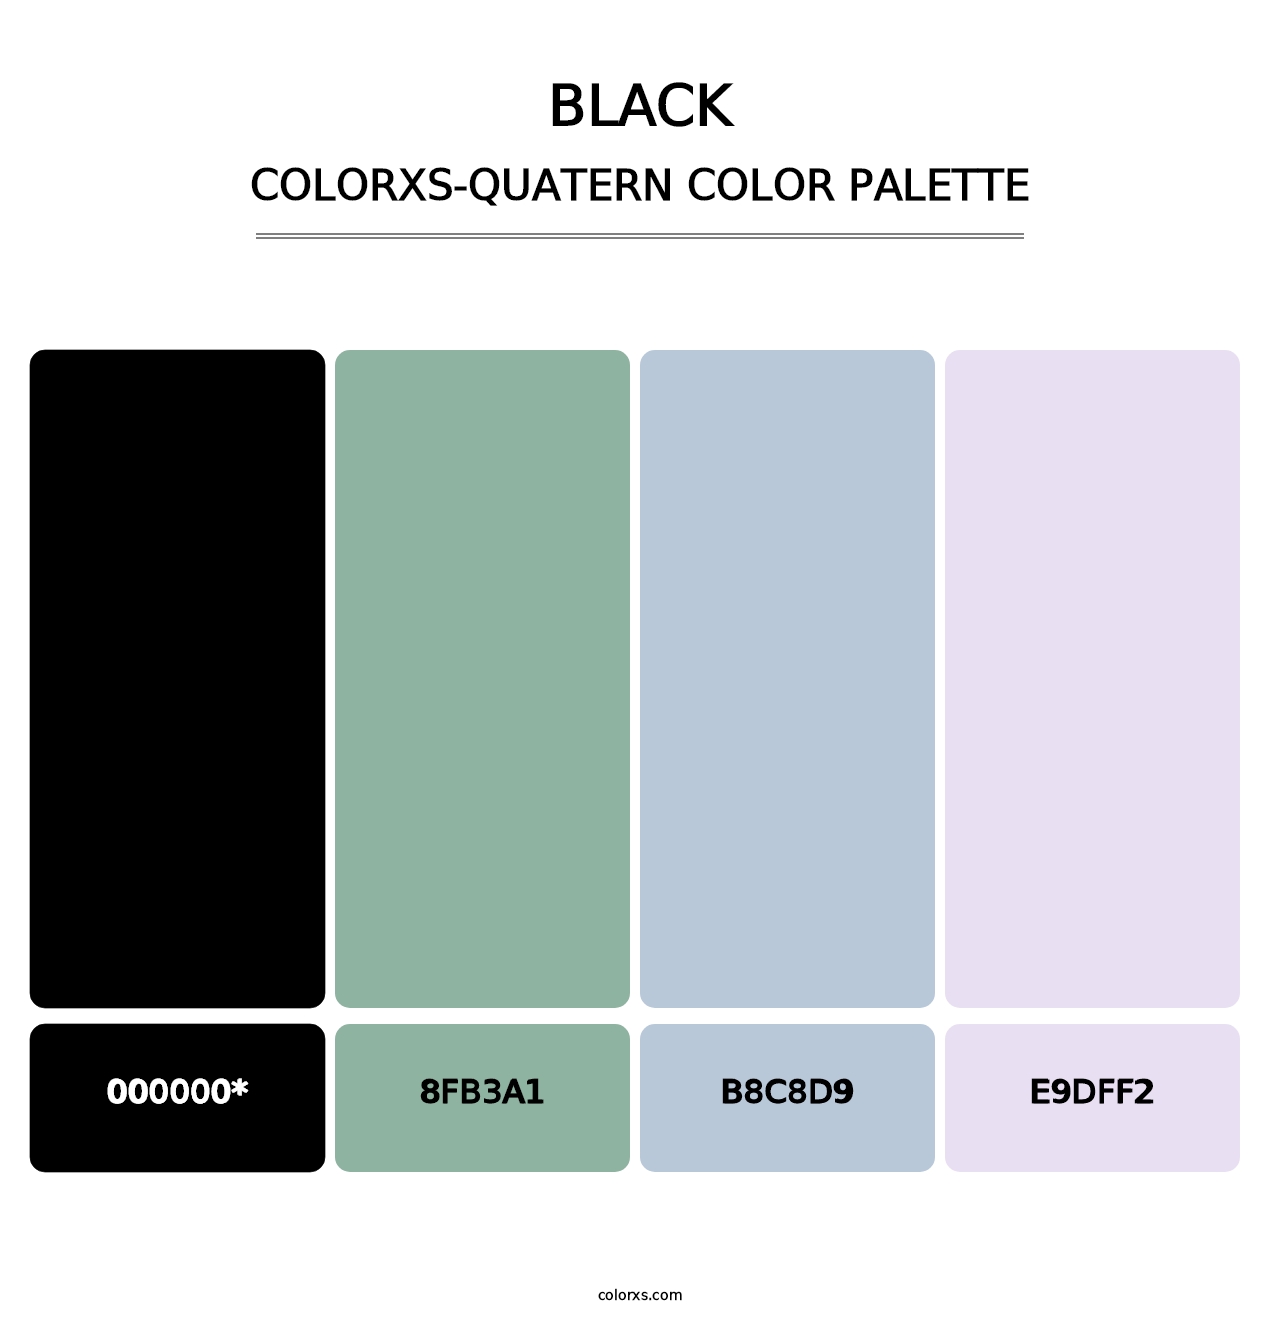 Black - Colorxs Quatern Palette